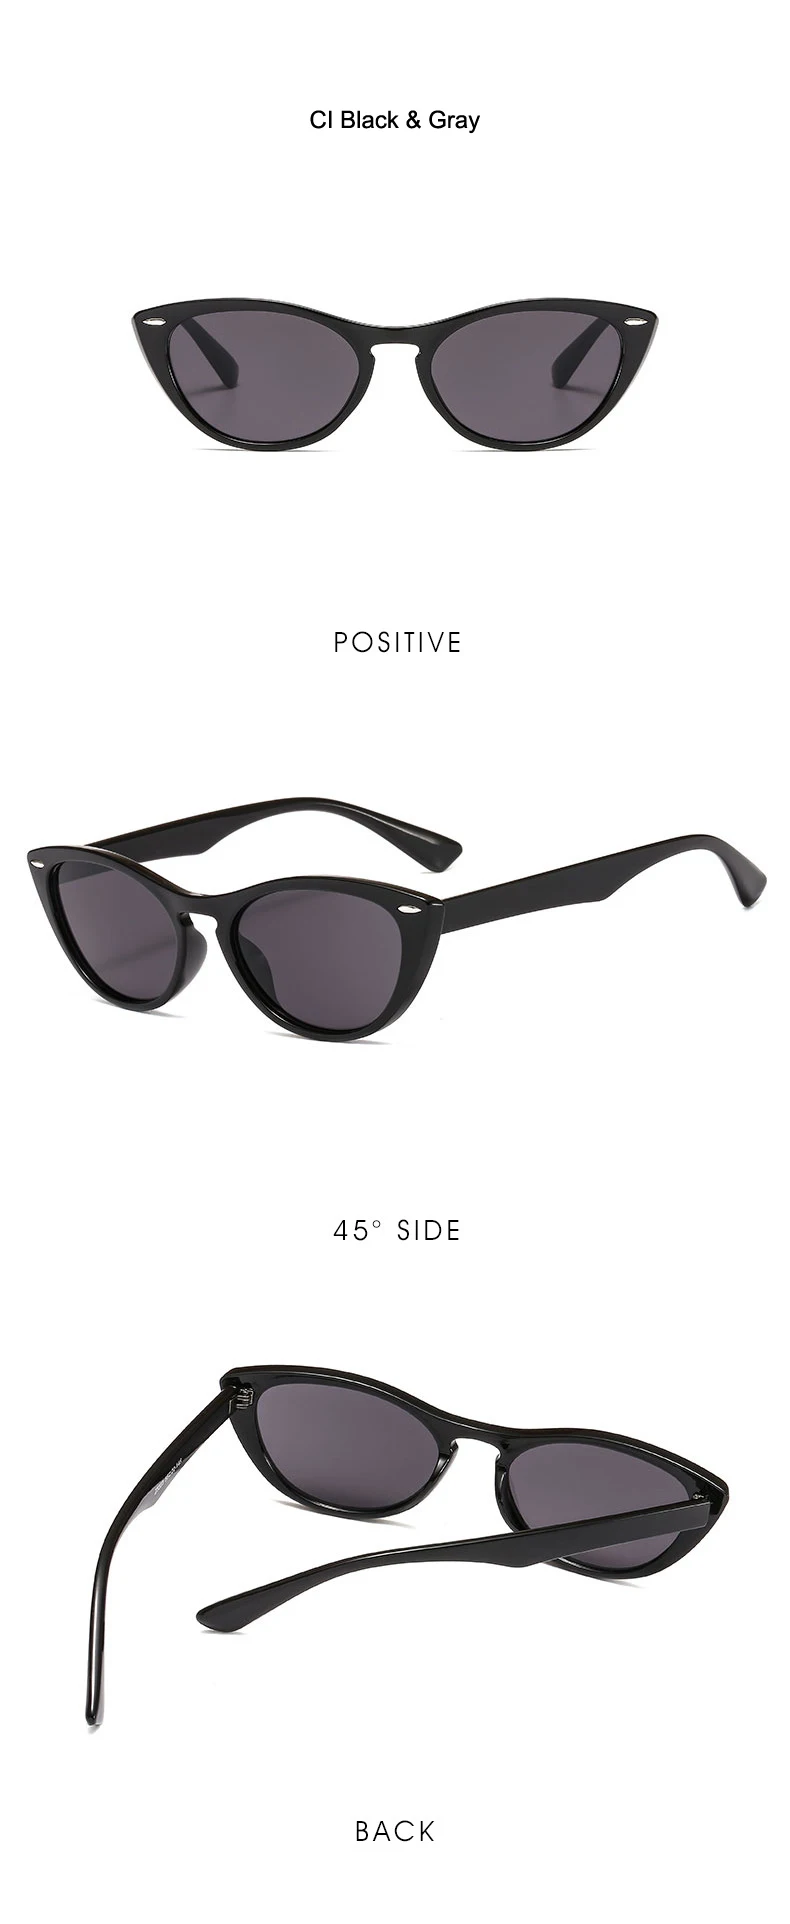 [EL Malus] маленькая леопардовая оправа кошачий глаз, солнцезащитные очки для женщин, женские трендовые очки, розовые, серые, коричневые линзы, UV400, очки для девушек